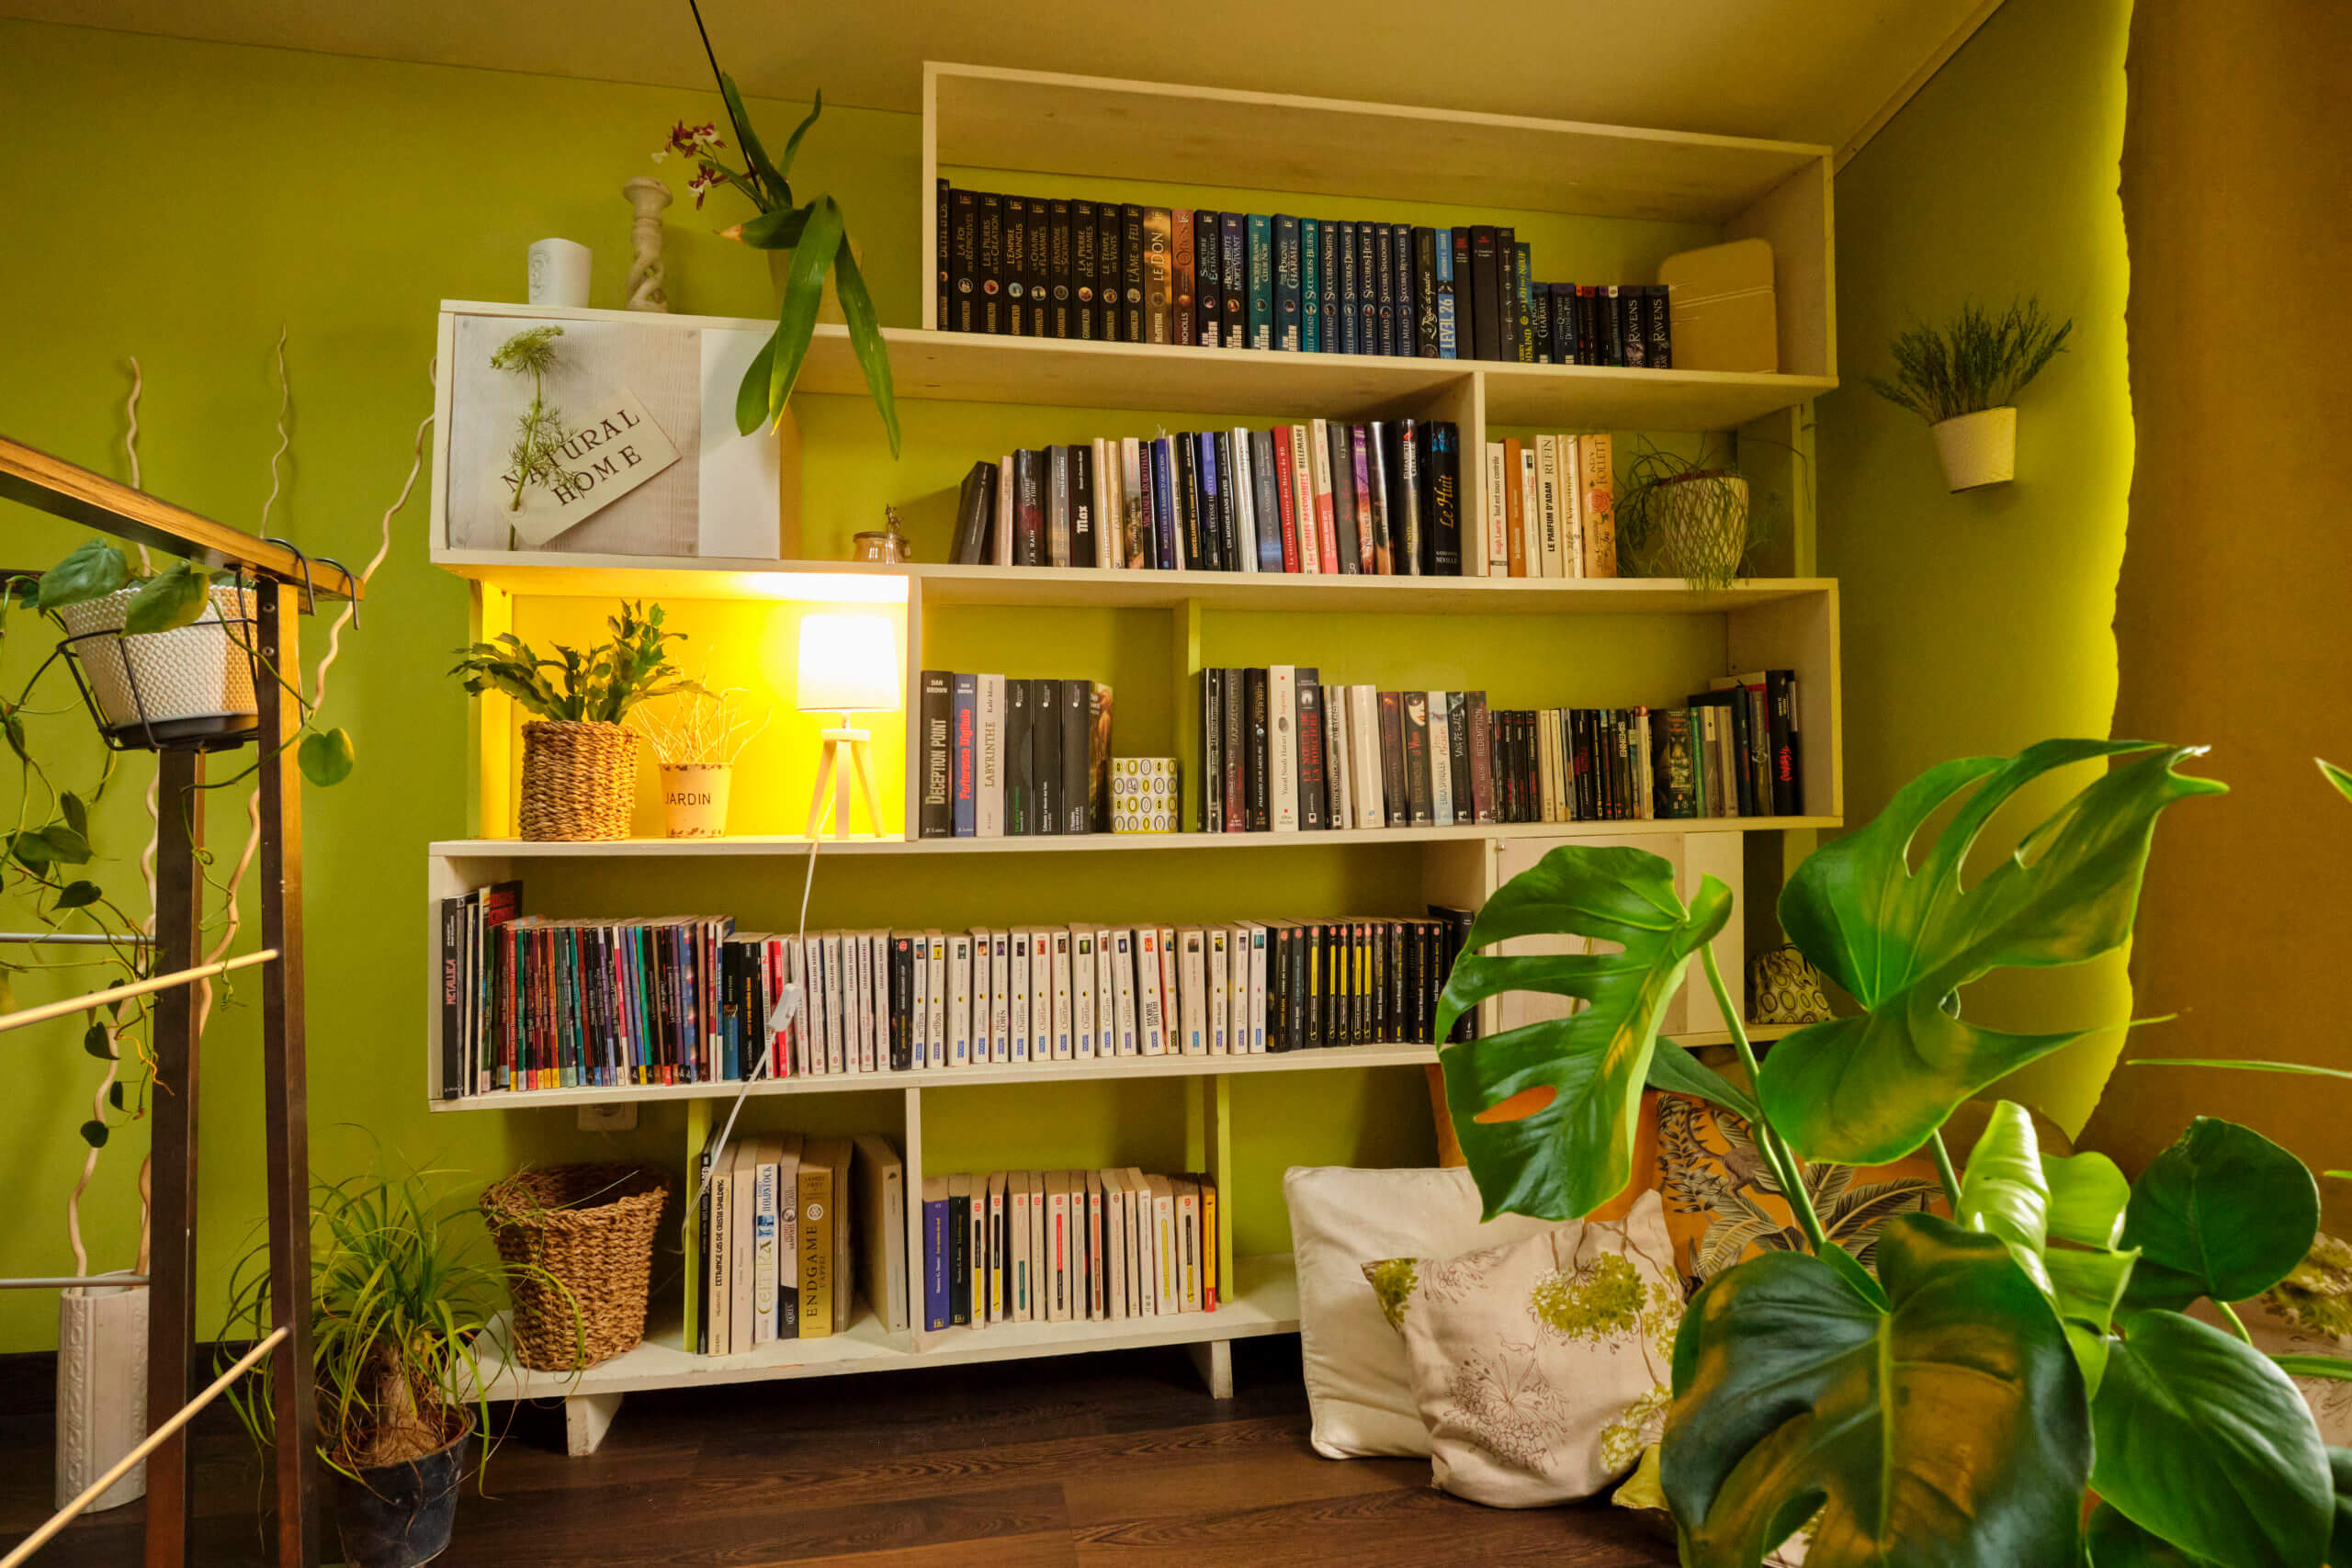 Bibliothèque réalisée par Georgette MagritteS après maquette 3D. Bibliothèque ouverte, entourée de plantes et de lumière.